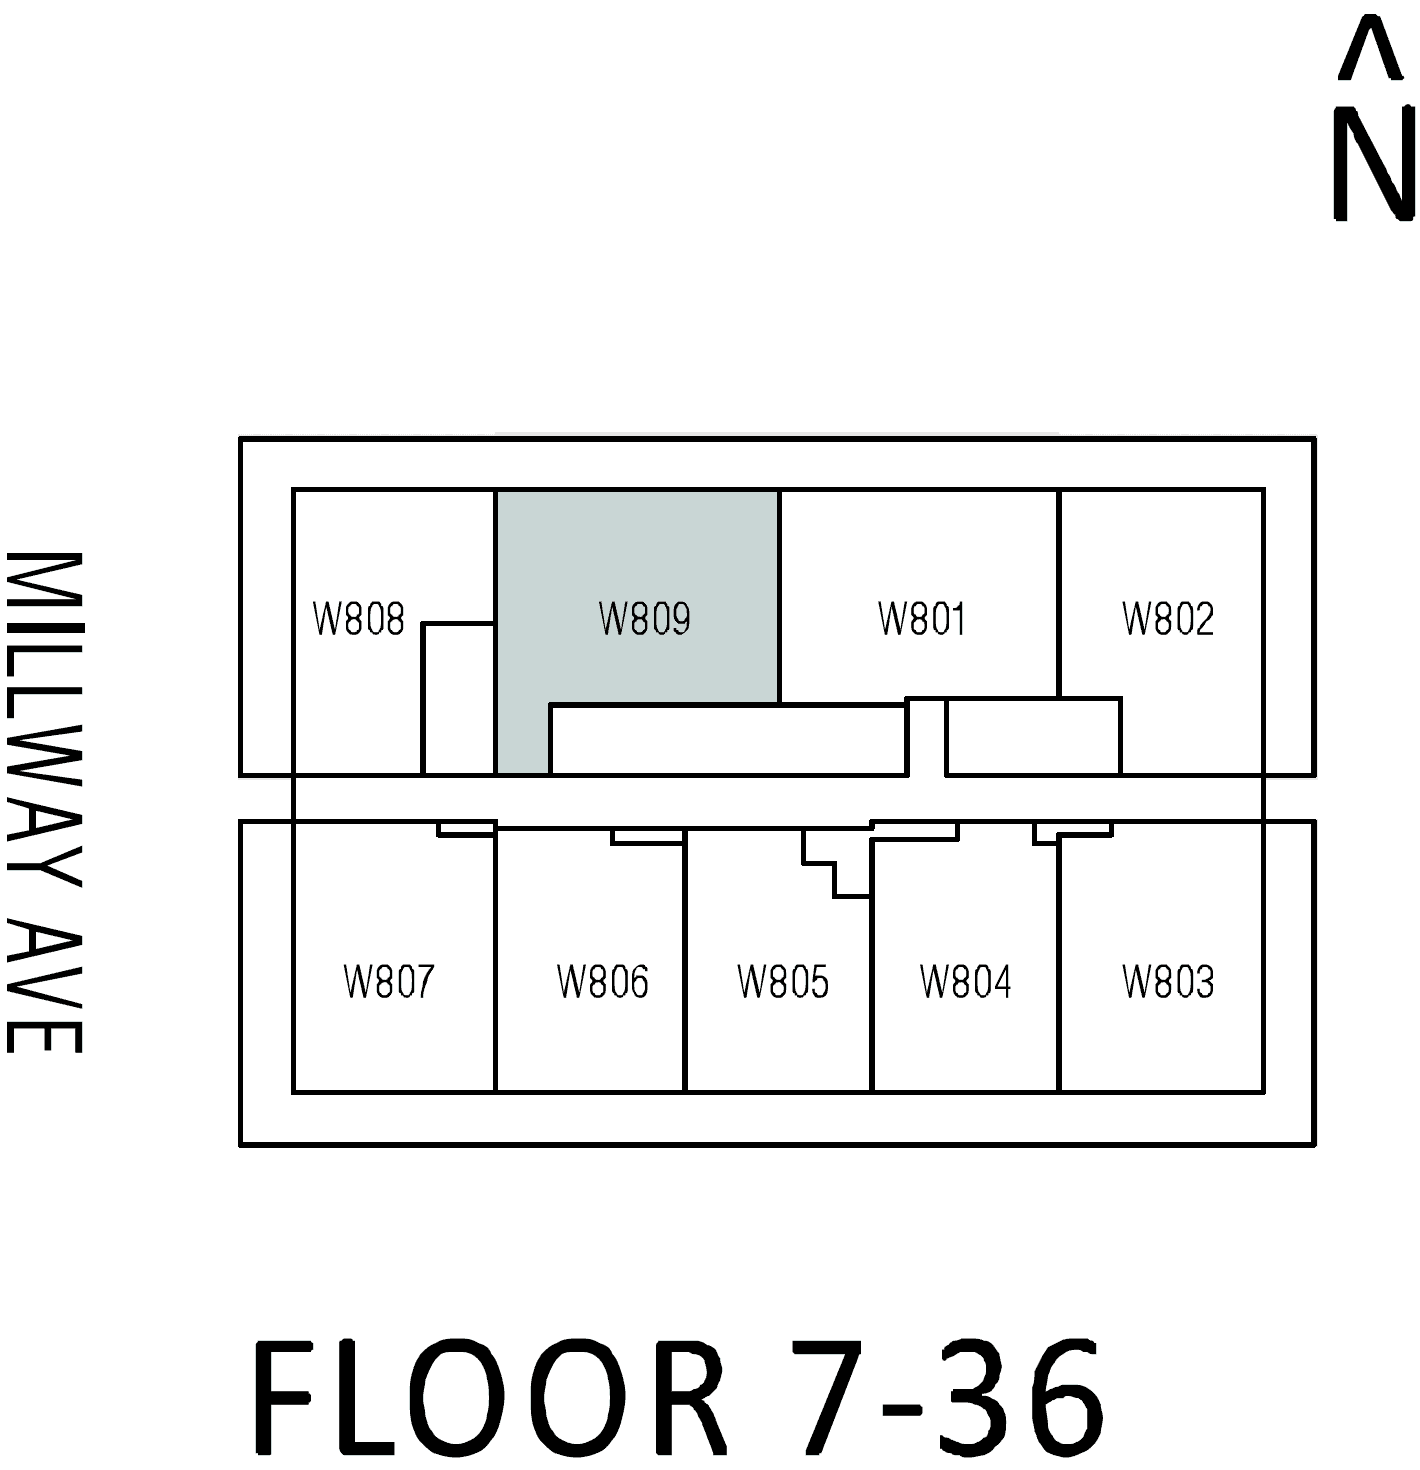 W09 floor plan